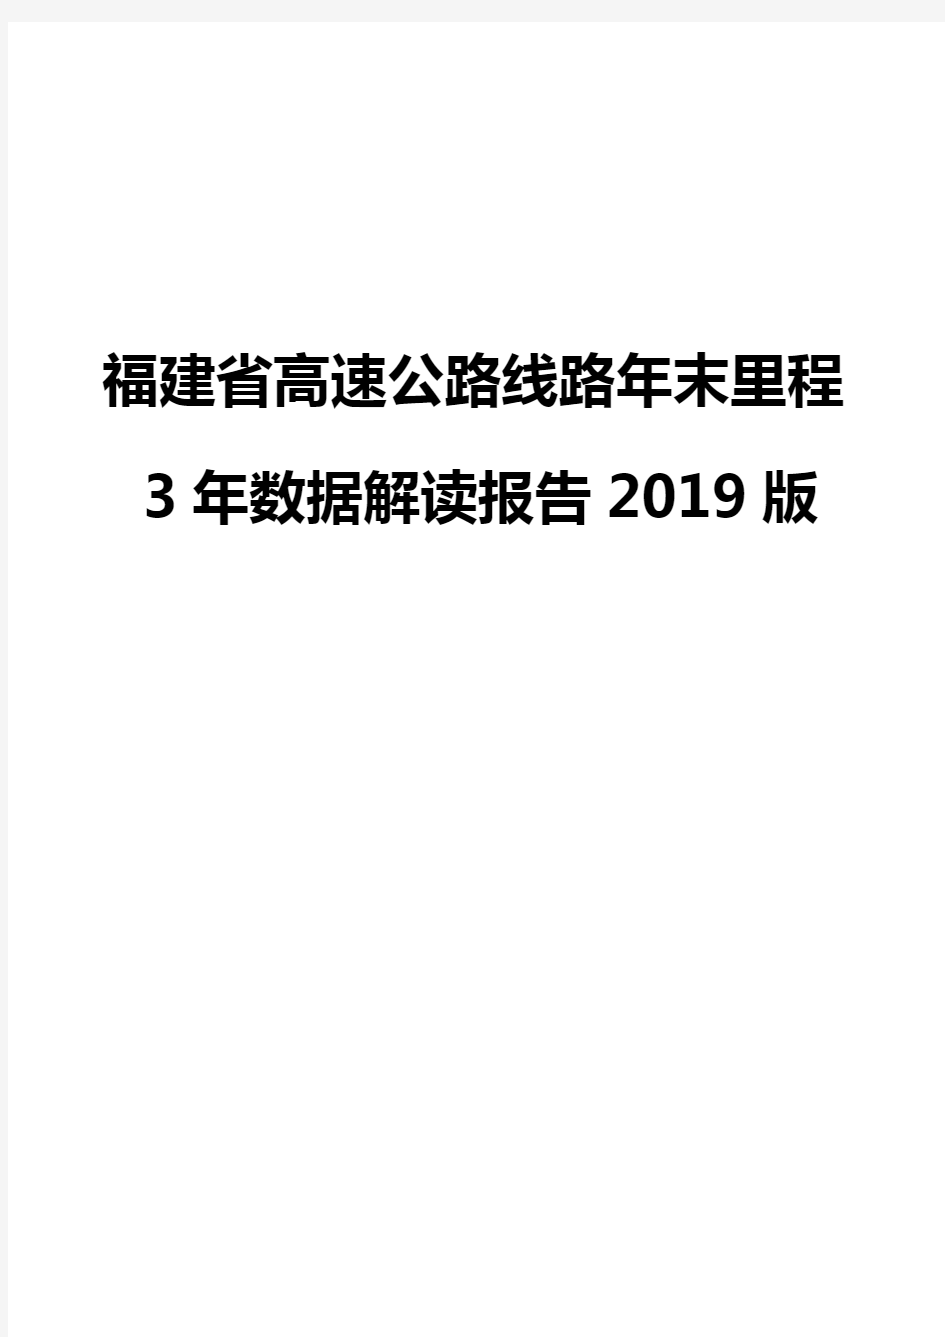 福建省高速公路线路年末里程3年数据解读报告2019版